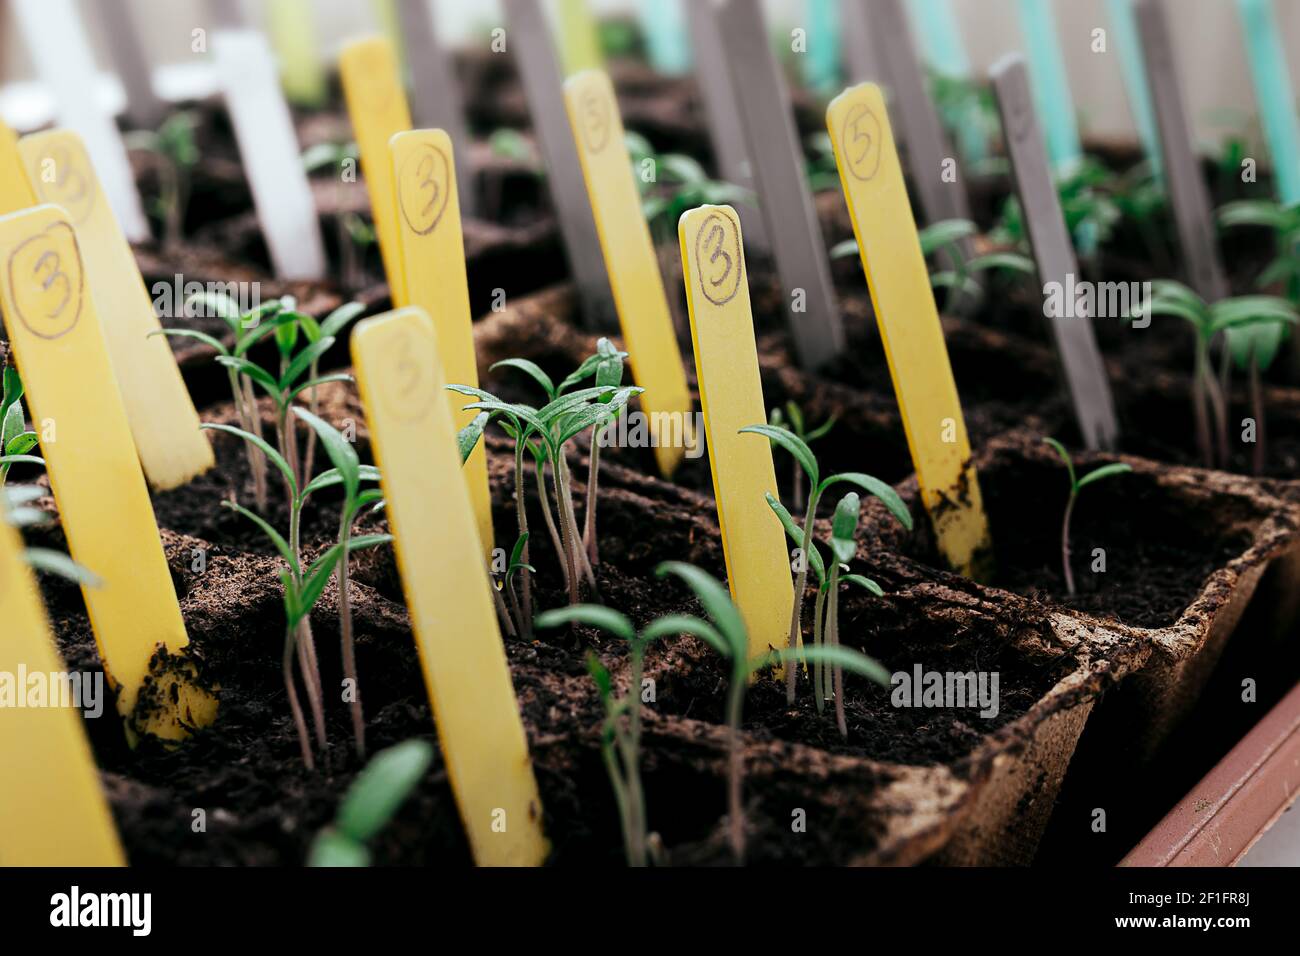 Jeunes pousses de vert vif de différentes variétés de tomate dans des pots de tourbe avec des étiquettes multicolores, le jardinage à la maison et le lien avec le concept de la nature Banque D'Images